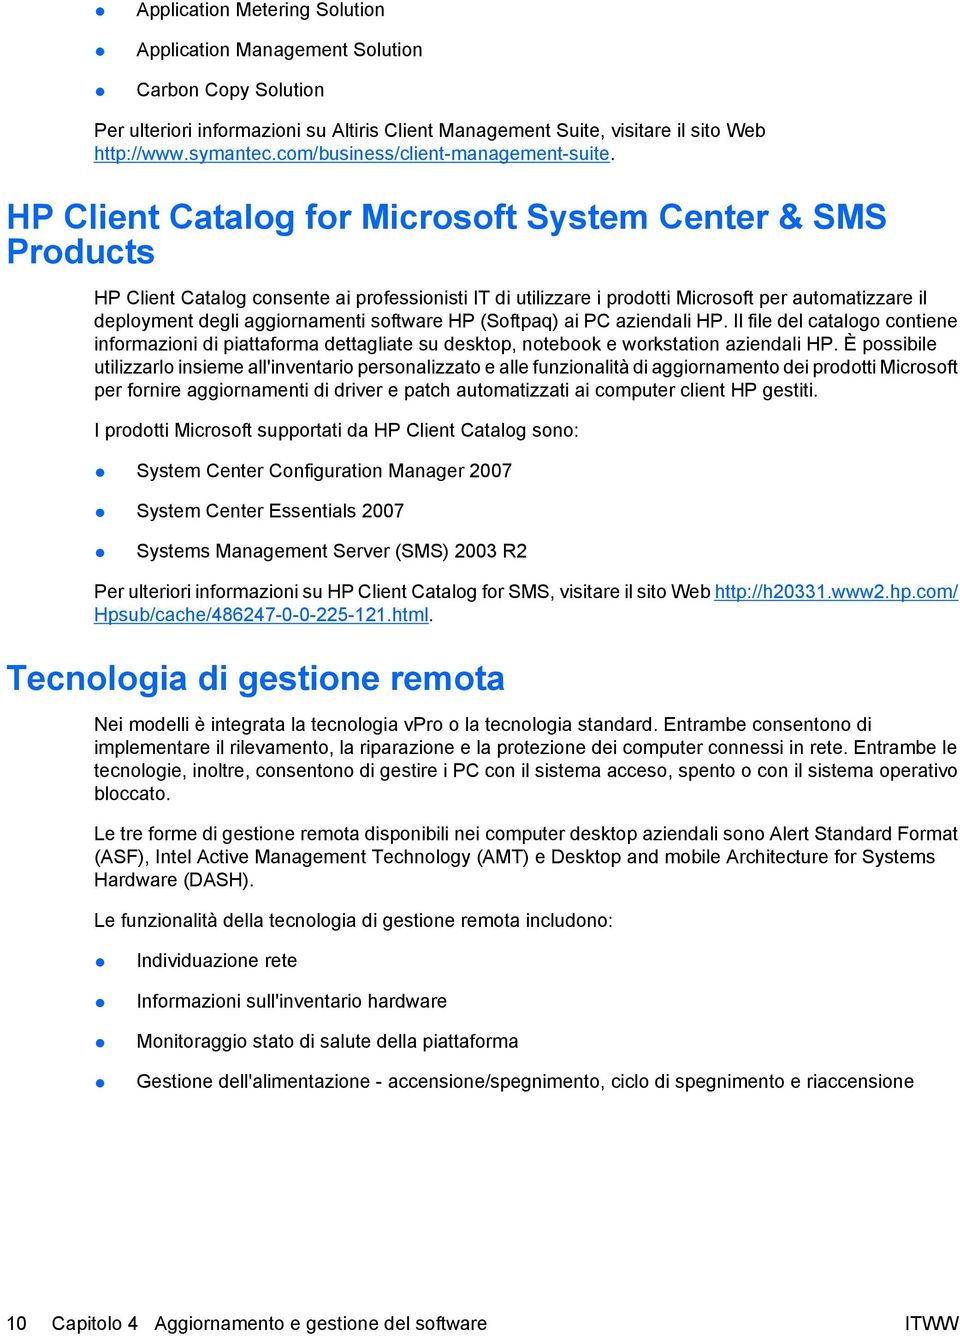 HP Client Catalog for Microsoft System Center & SMS Products HP Client Catalog consente ai professionisti IT di utilizzare i prodotti Microsoft per automatizzare il deployment degli aggiornamenti